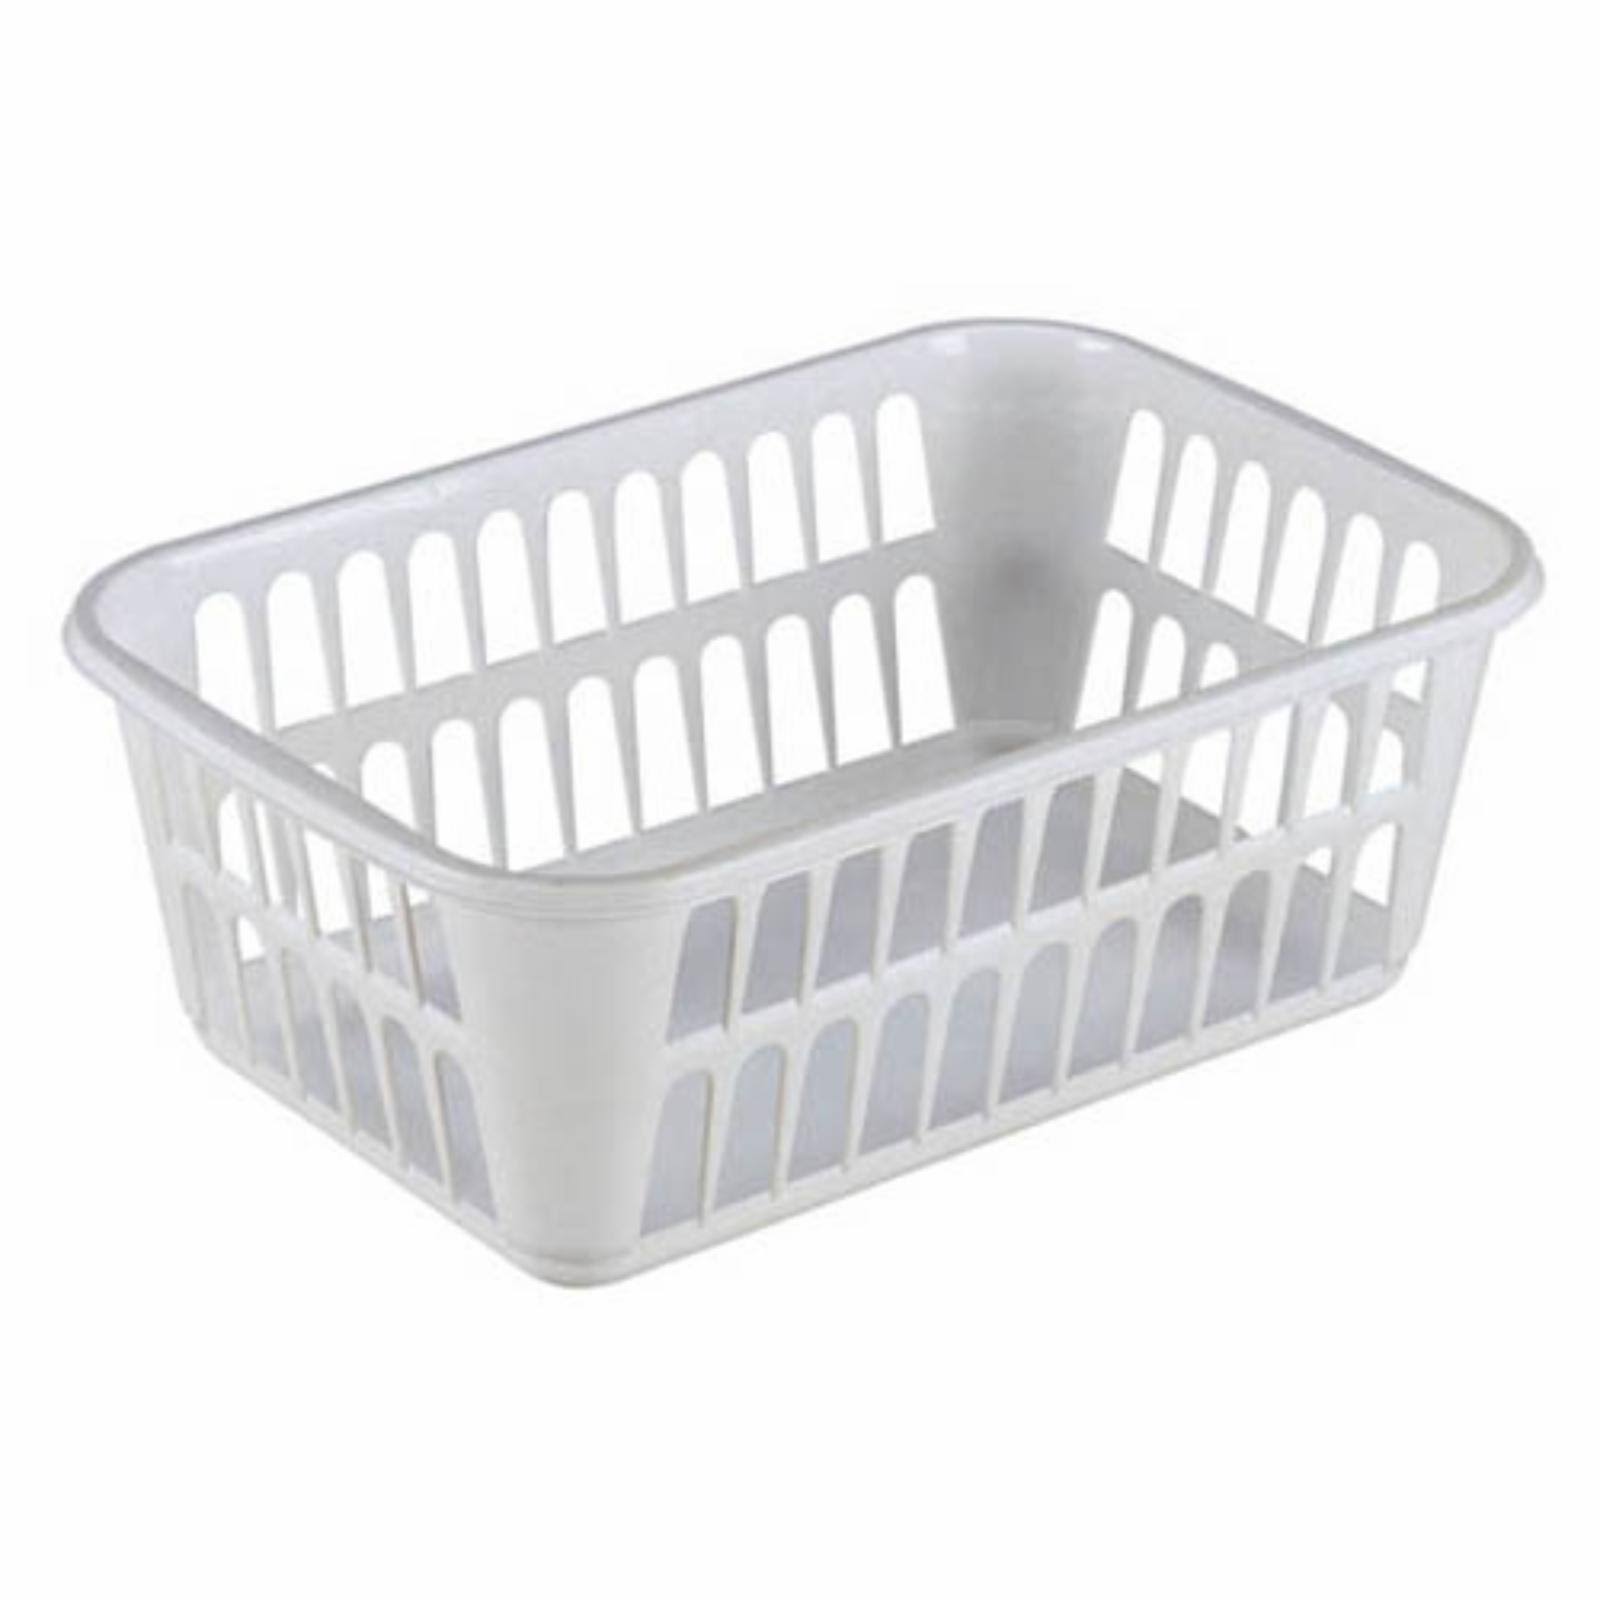 Sterilite Plastic Storage Basket - White, Medium